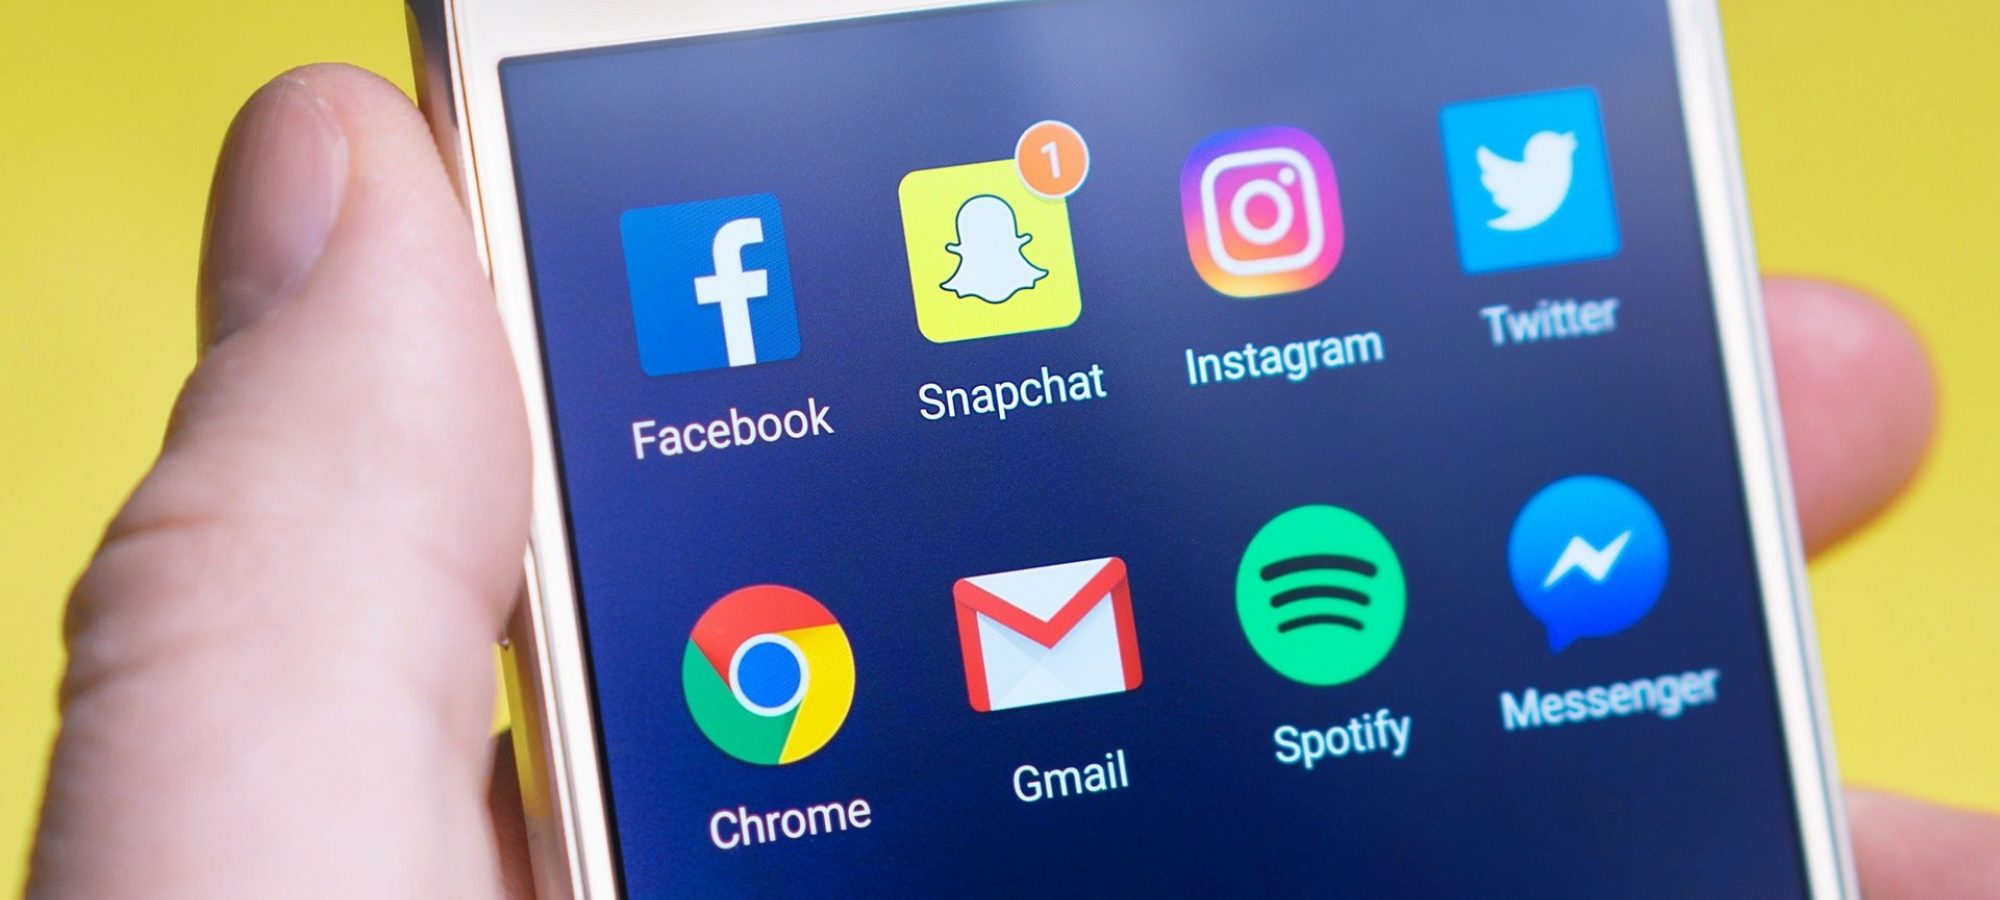 Smartphonedisplay mit Icons von Sozialen Netzwerken